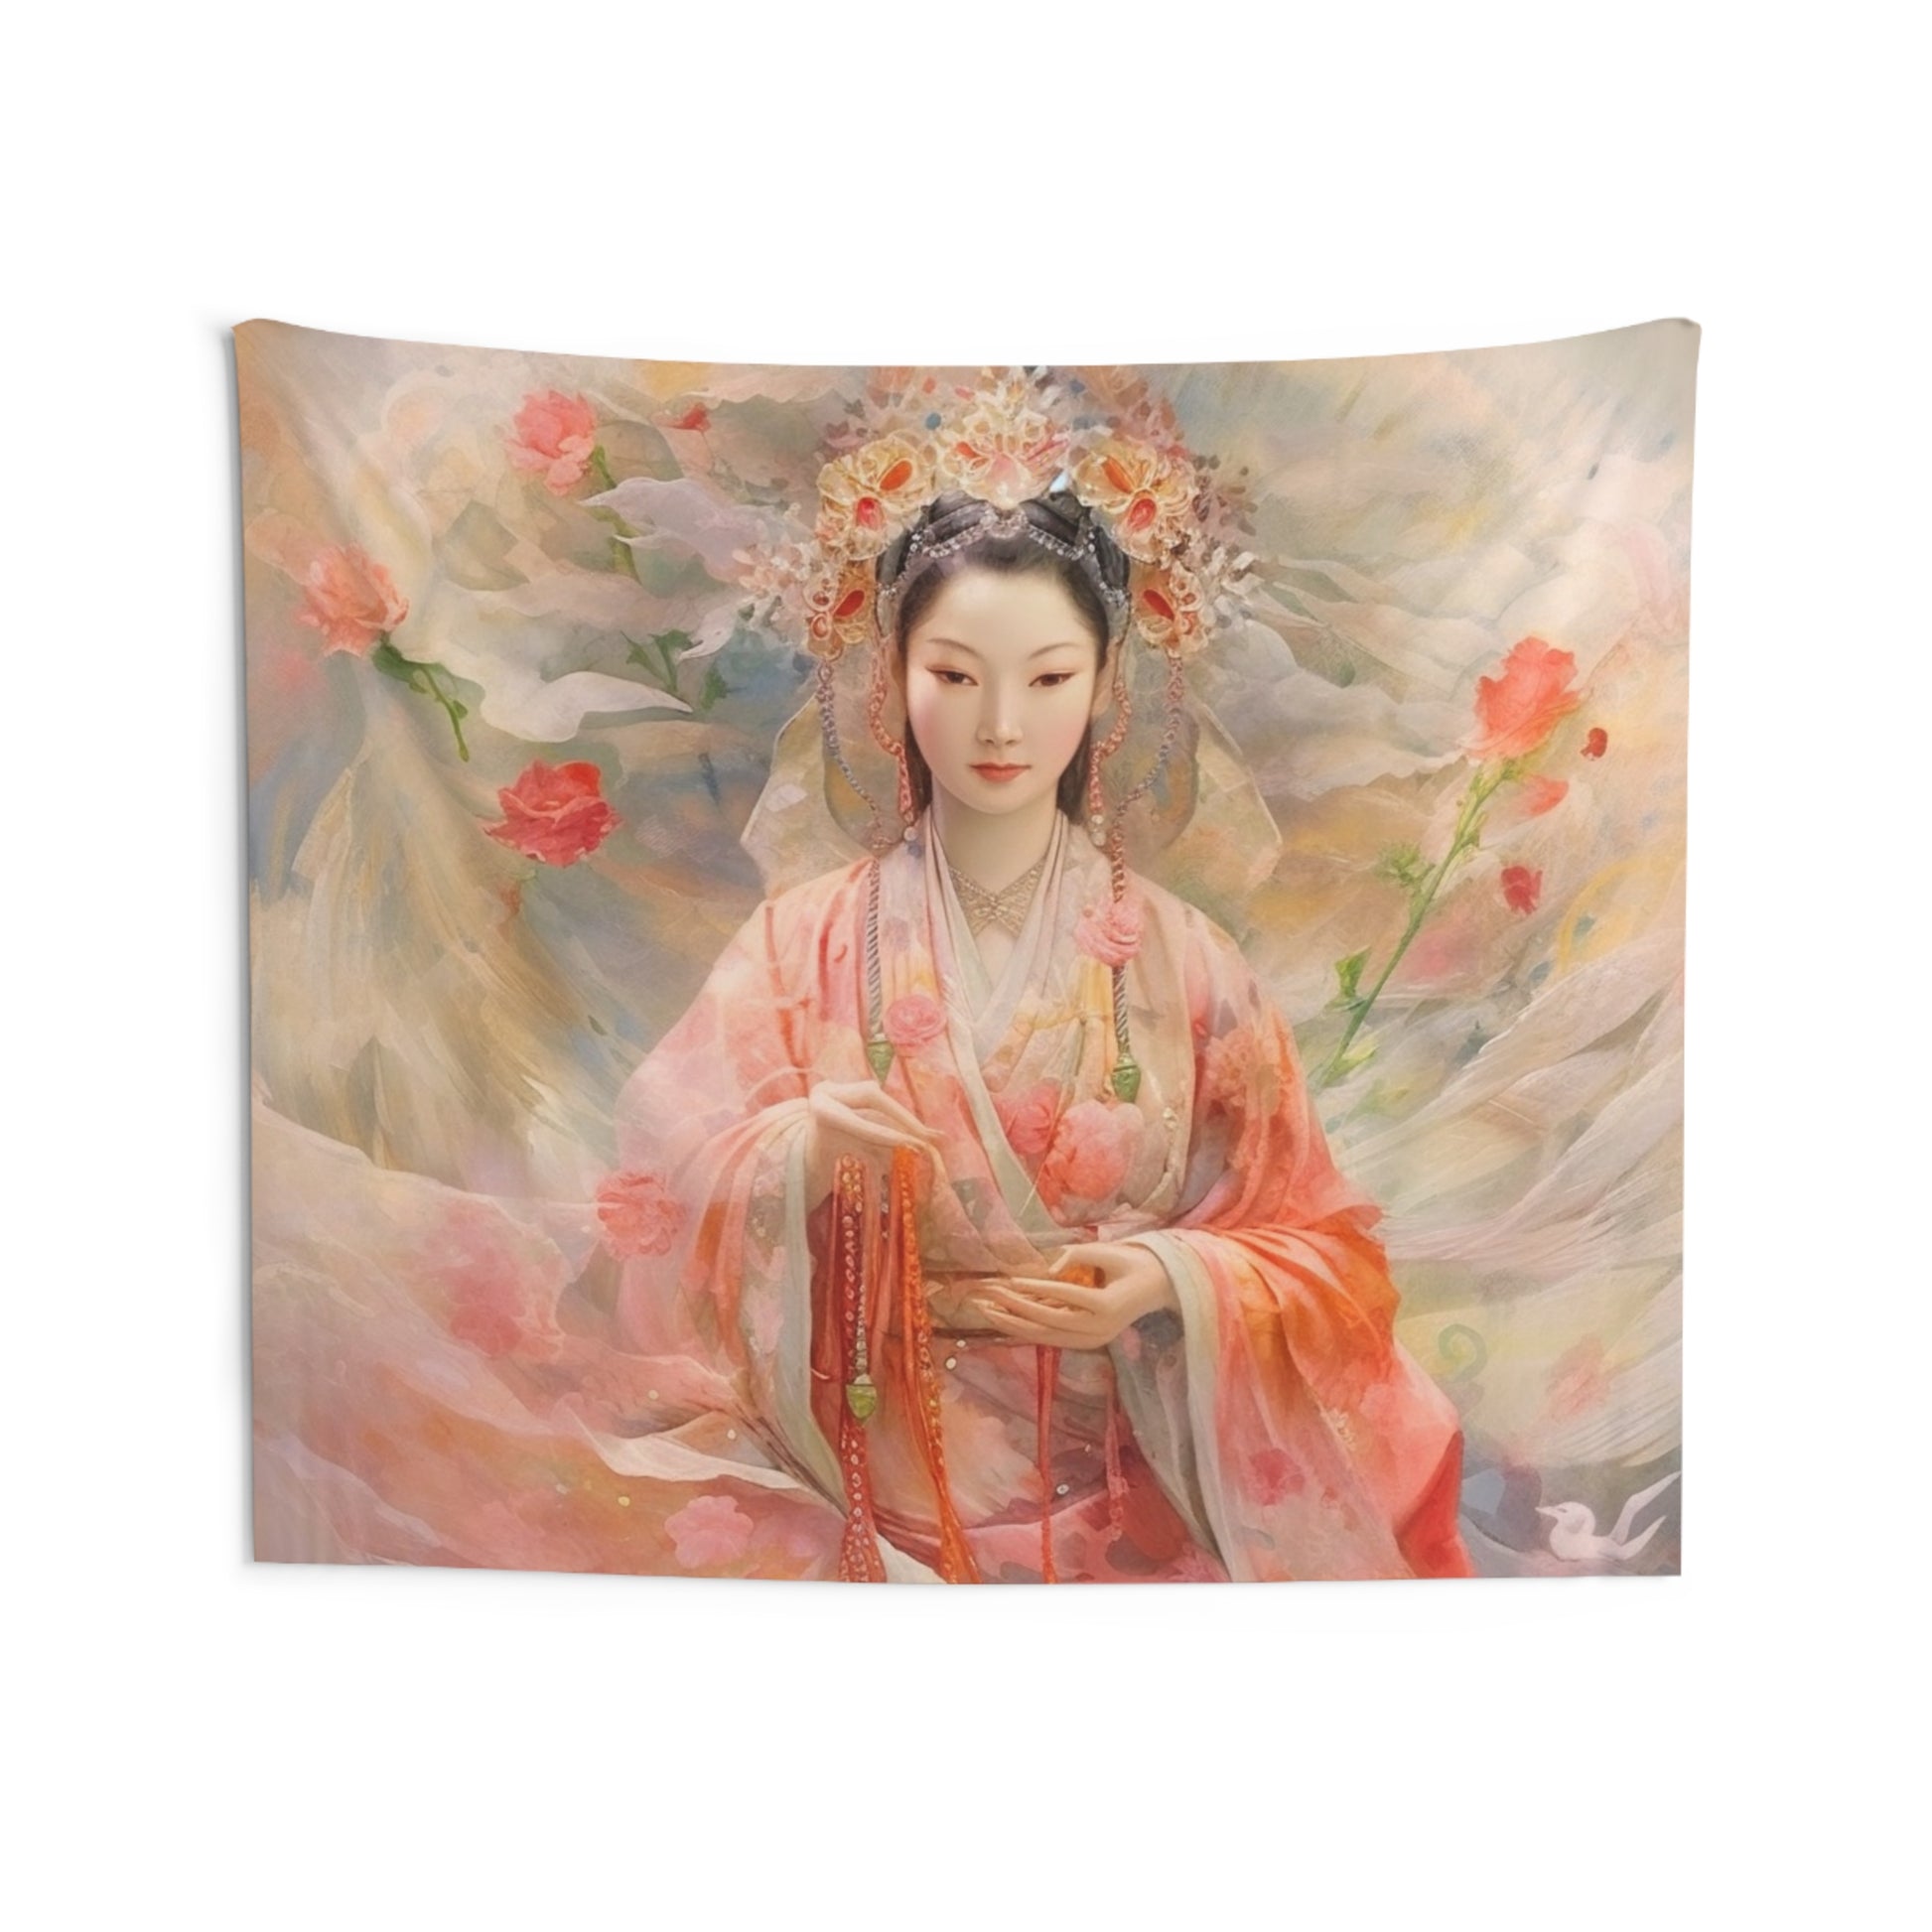 Quan Yin Wall Tapestry - Guan Yin, Kwan Yin, Goddess of Compassion - Spiritual Wall Decor for Buddhism Home Decor 80" × 68"  